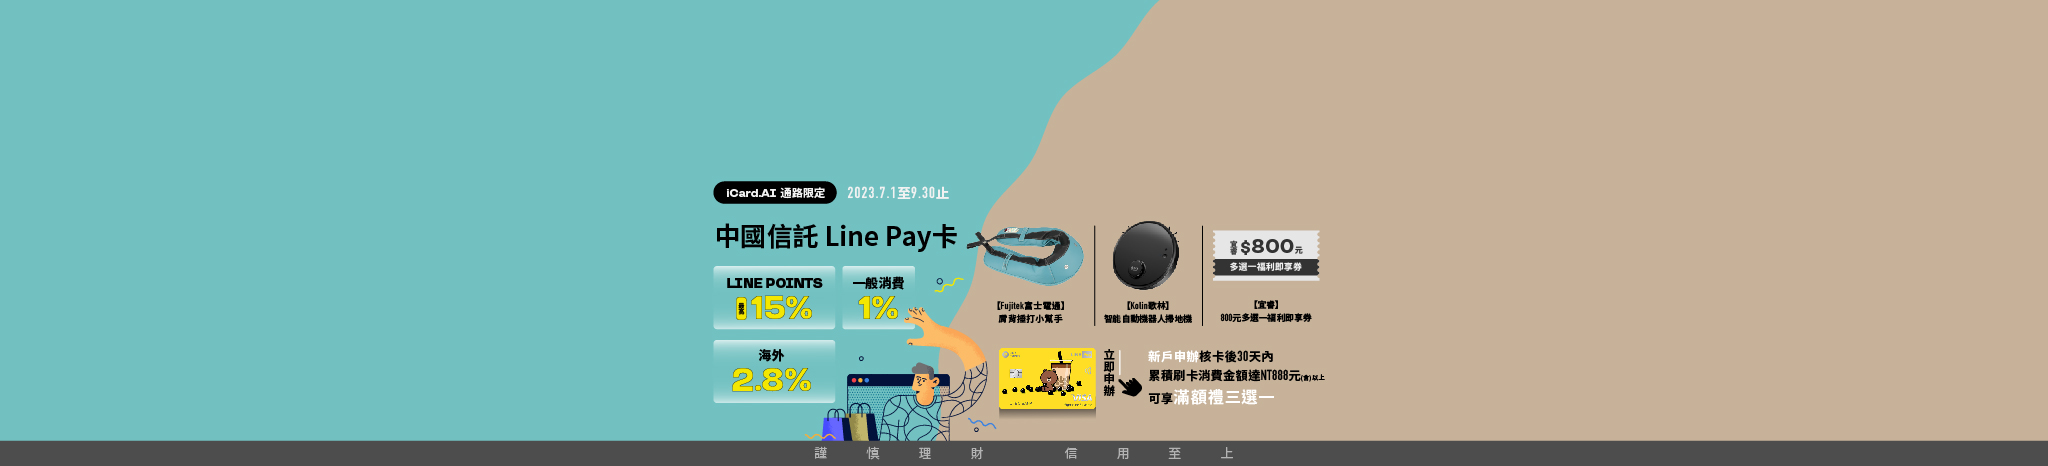 中信LINE PAY卡0930